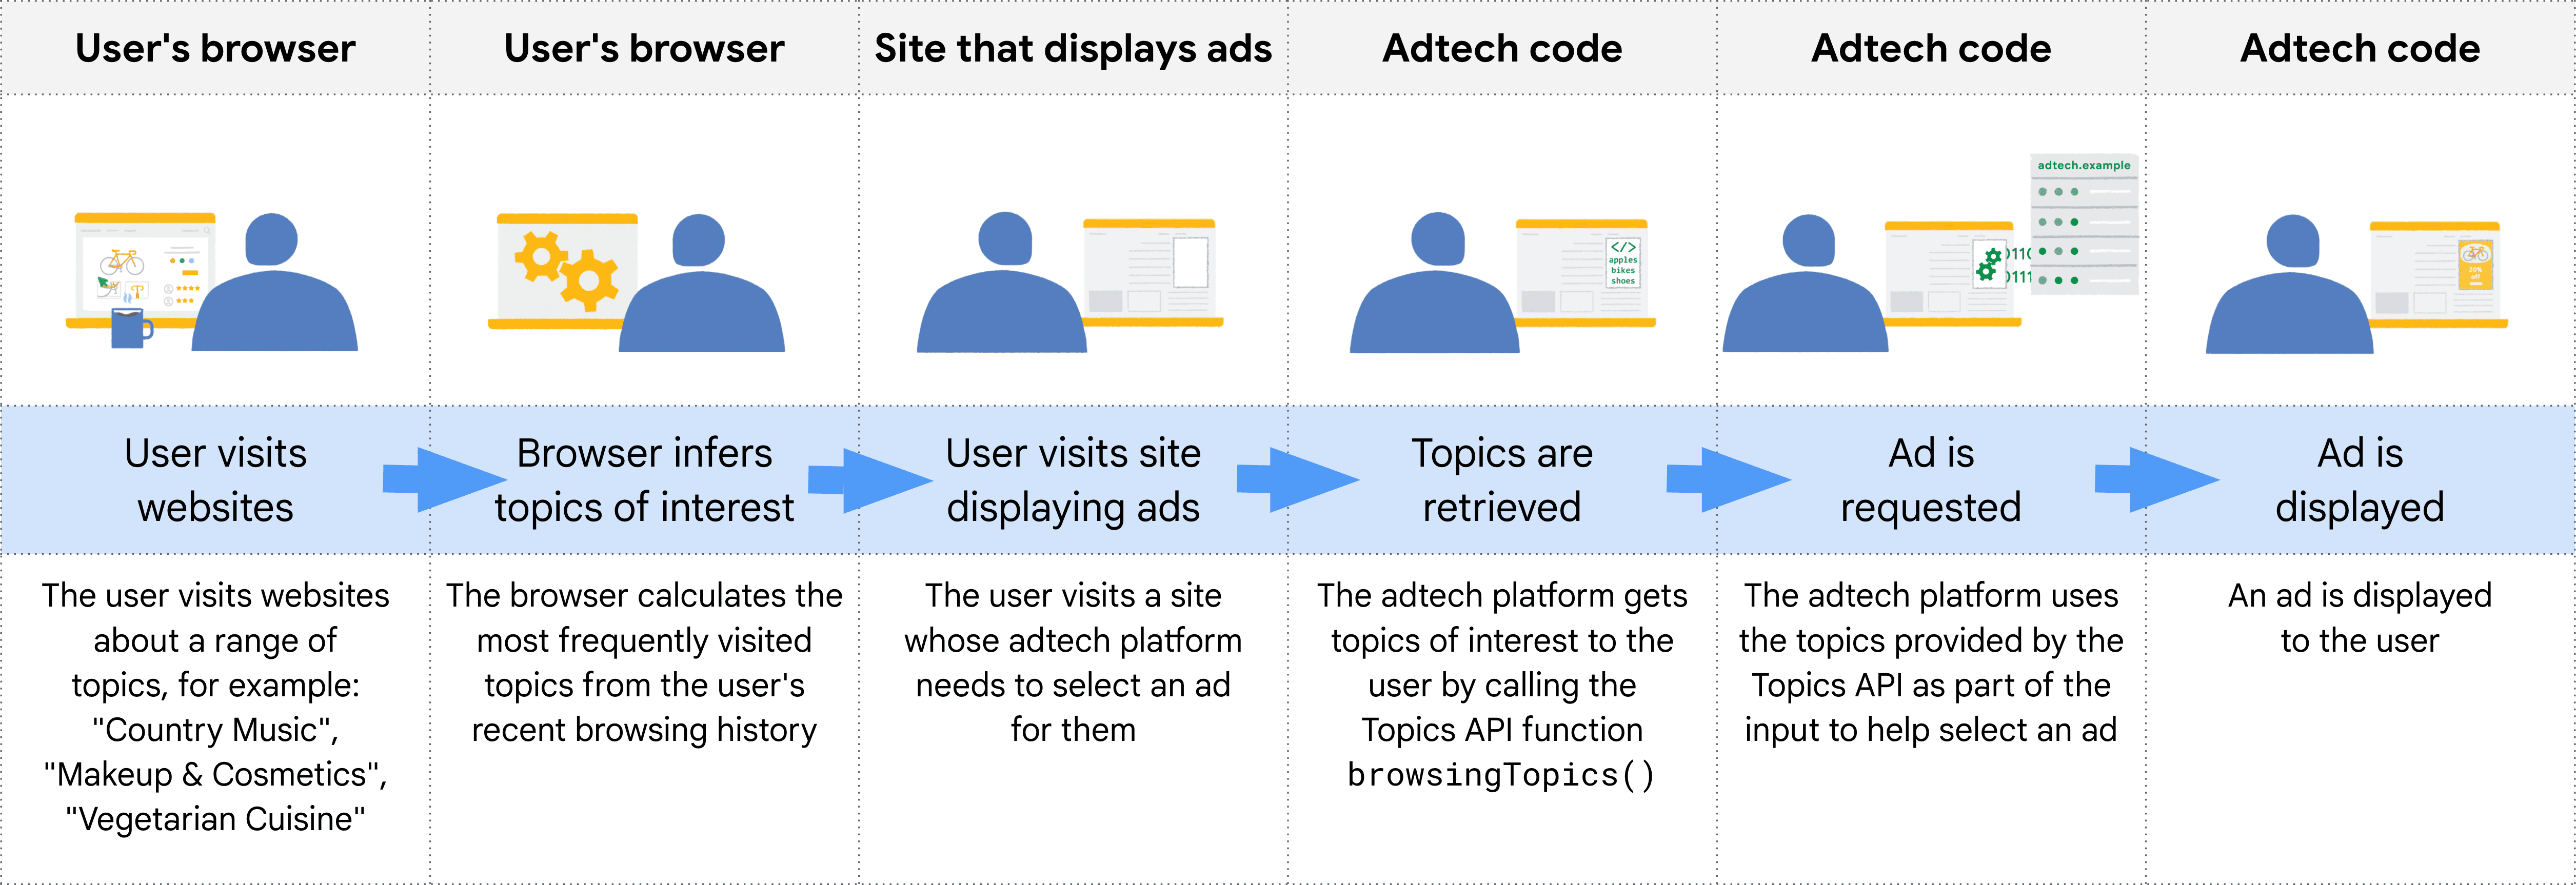 Topics API की लाइफ़साइकल के अलग-अलग स्टेज दिखाने वाला डायग्राम. इसमें, वेबसाइट पर आने वाले उपयोगकर्ता से लेकर दिखाए गए विज्ञापन तक के अलग-अलग स्टेज दिखाए गए हैं.